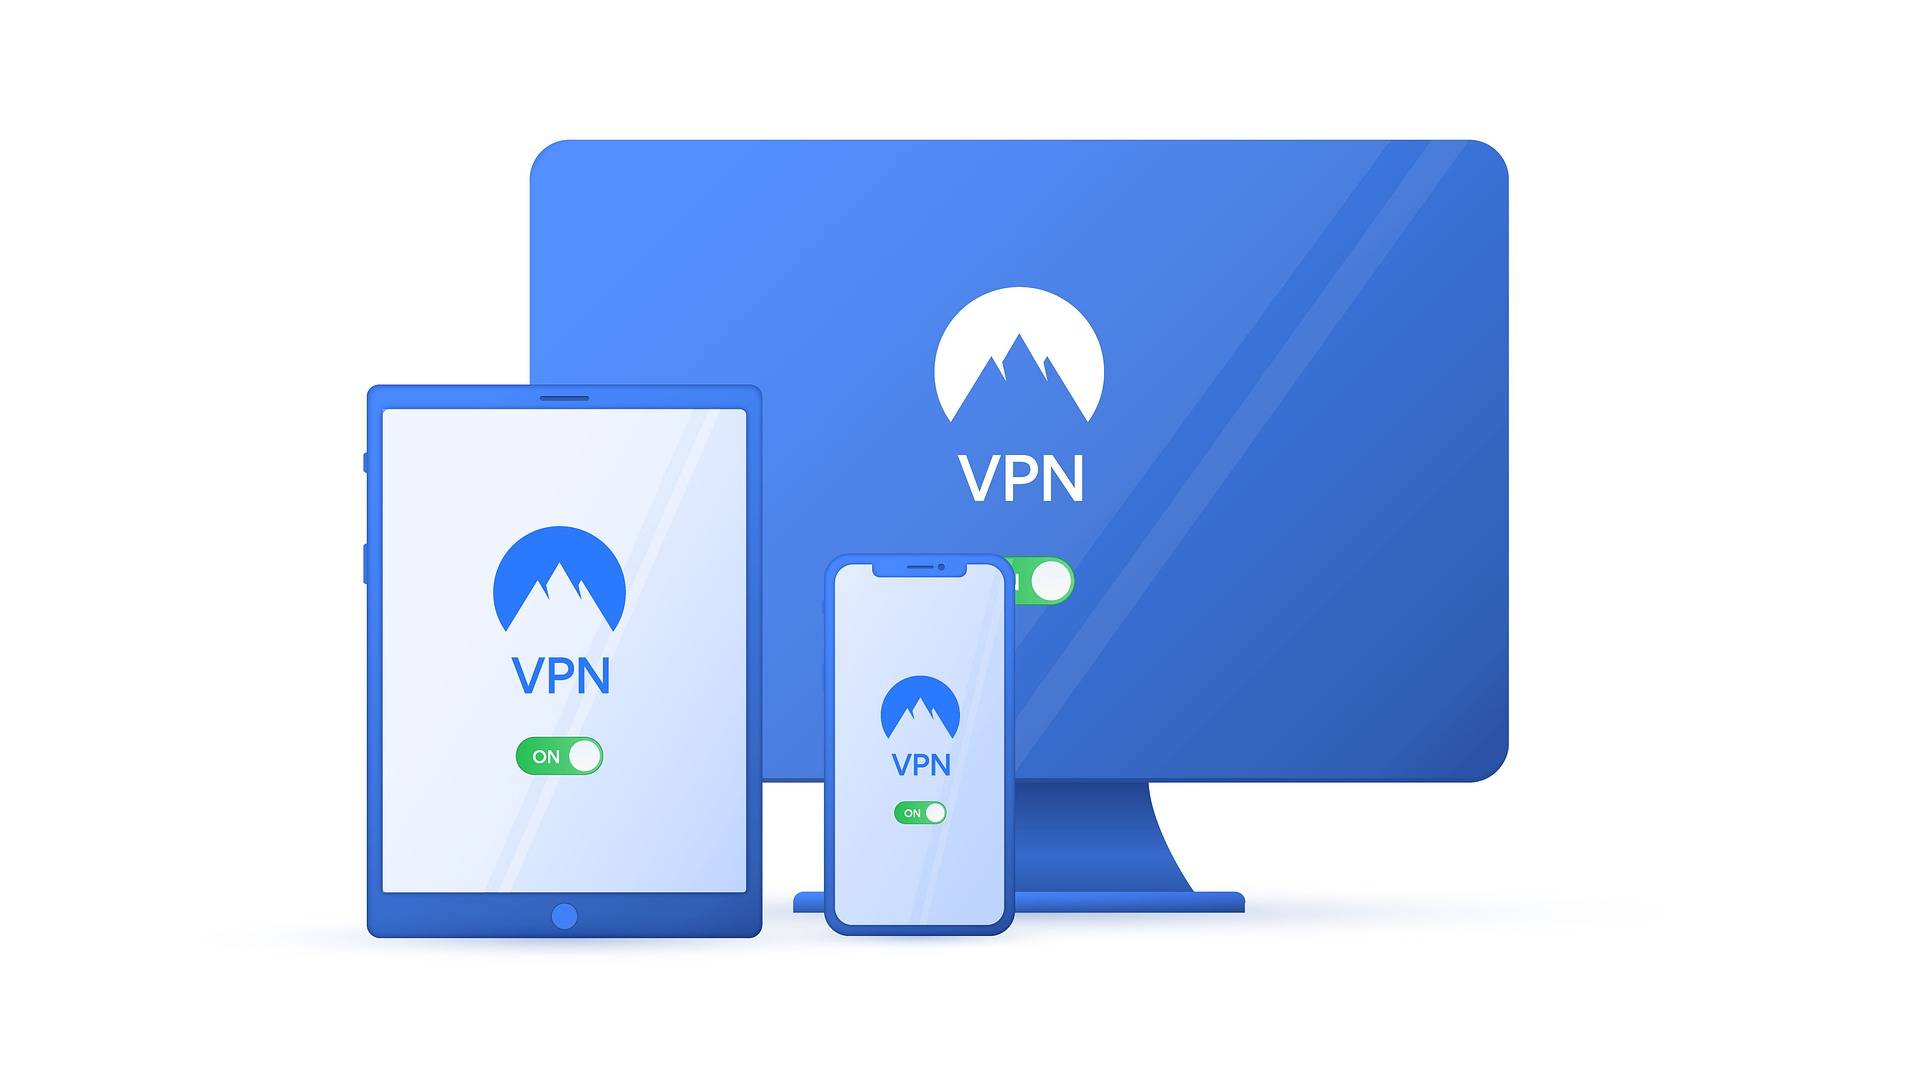 Warum sollte ich ein VPN auf meinem Smartphone einrichten?